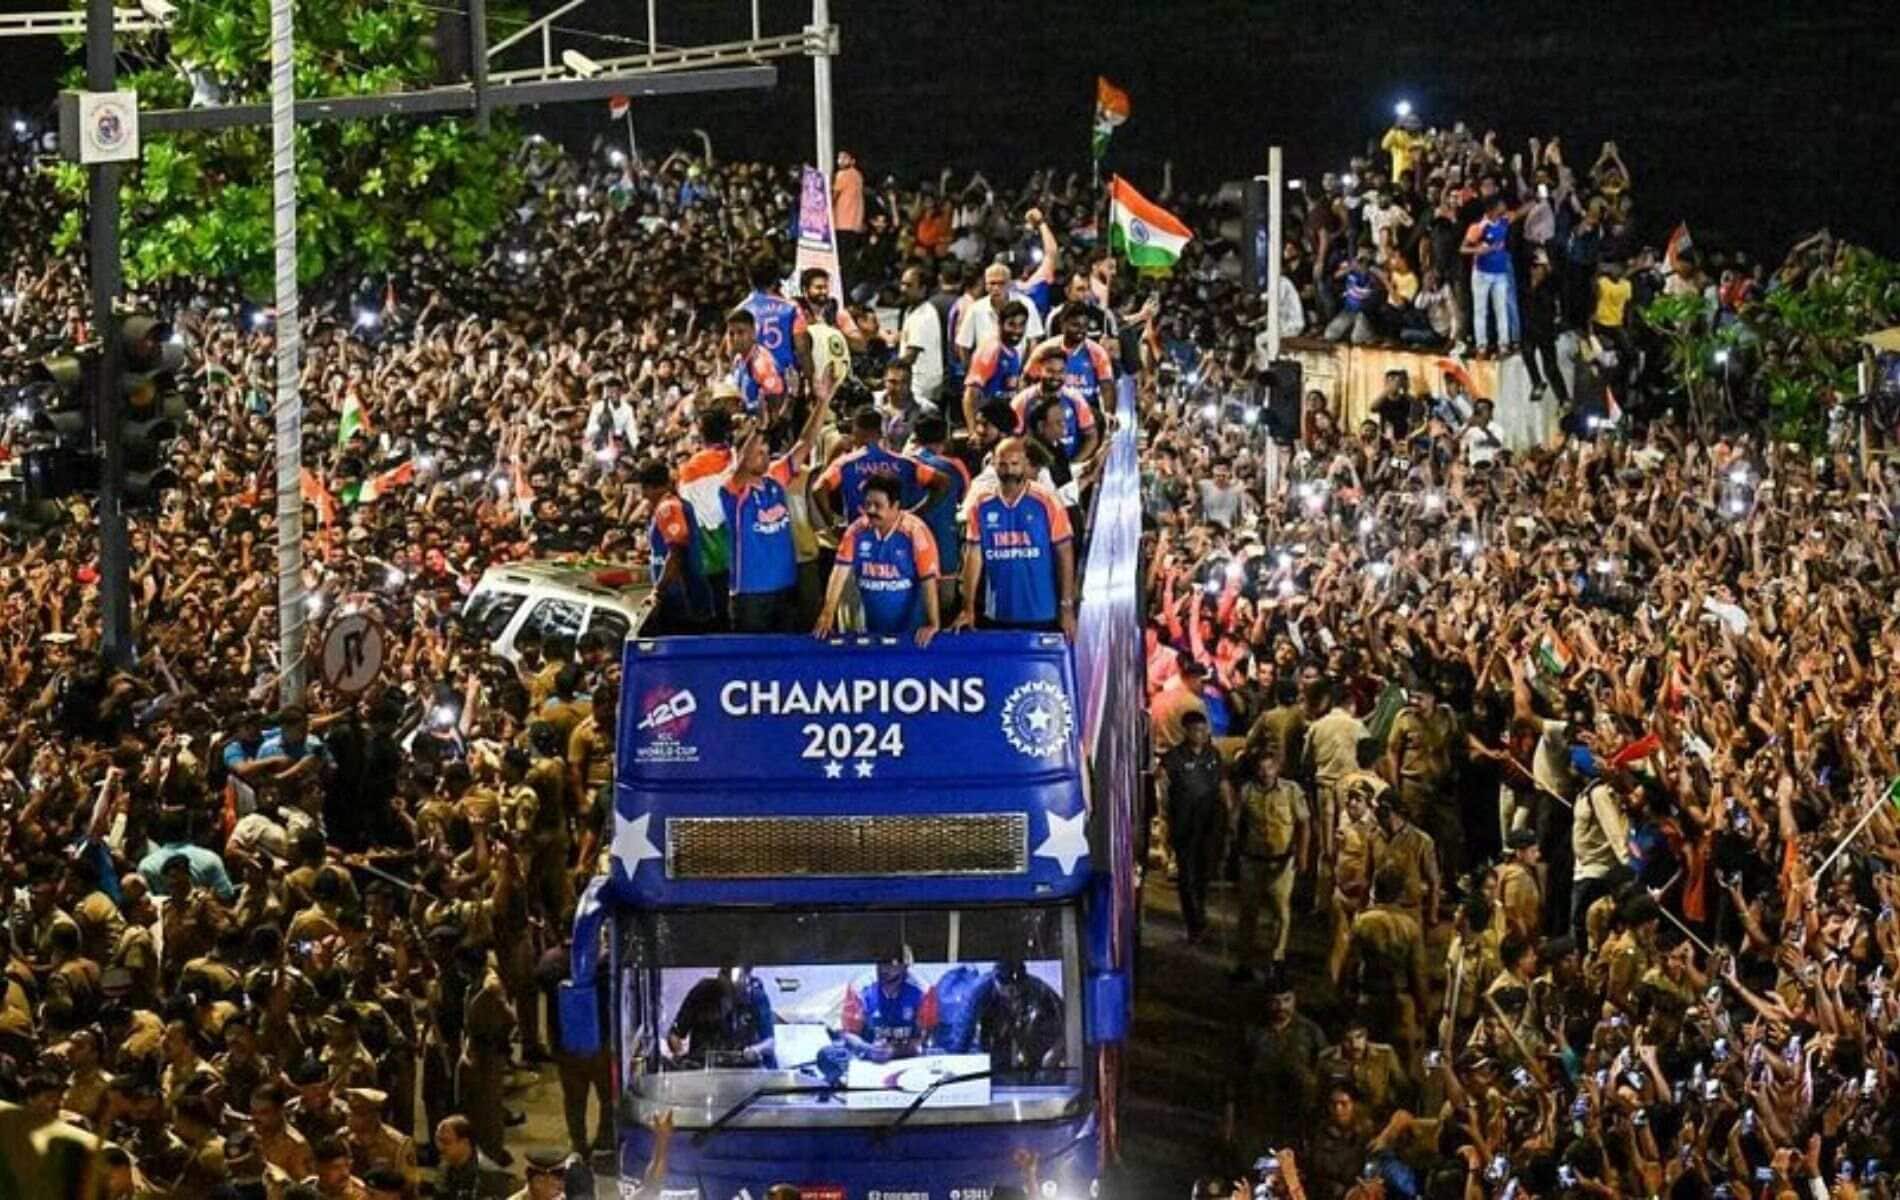 'खेल लोगों को एकजुट करता है...': टीम इंडिया की ऐतिहासिक विजय परेड की सराहना करते हुए बोले लक्ष्मण